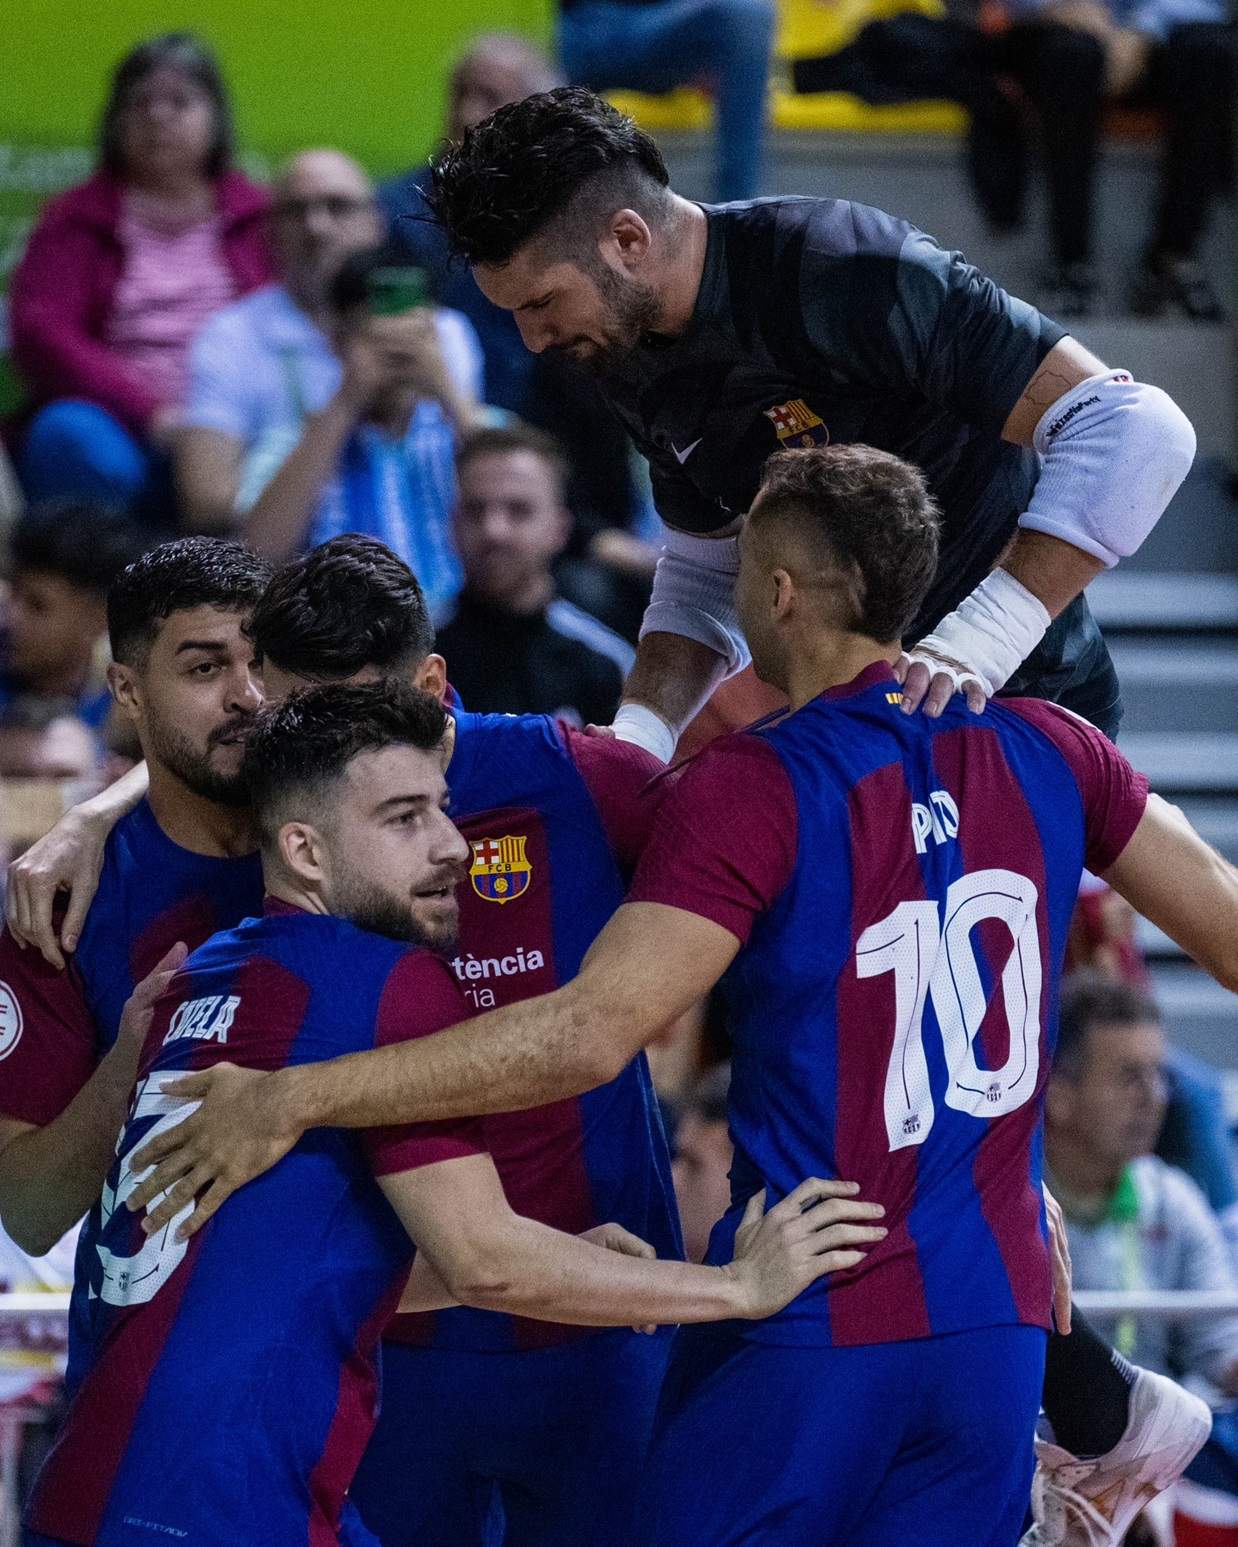 El Barça de fútbol sala se proclama campeón de la Copa del Rey en una agónica tanda de penaltis contra el Pozo